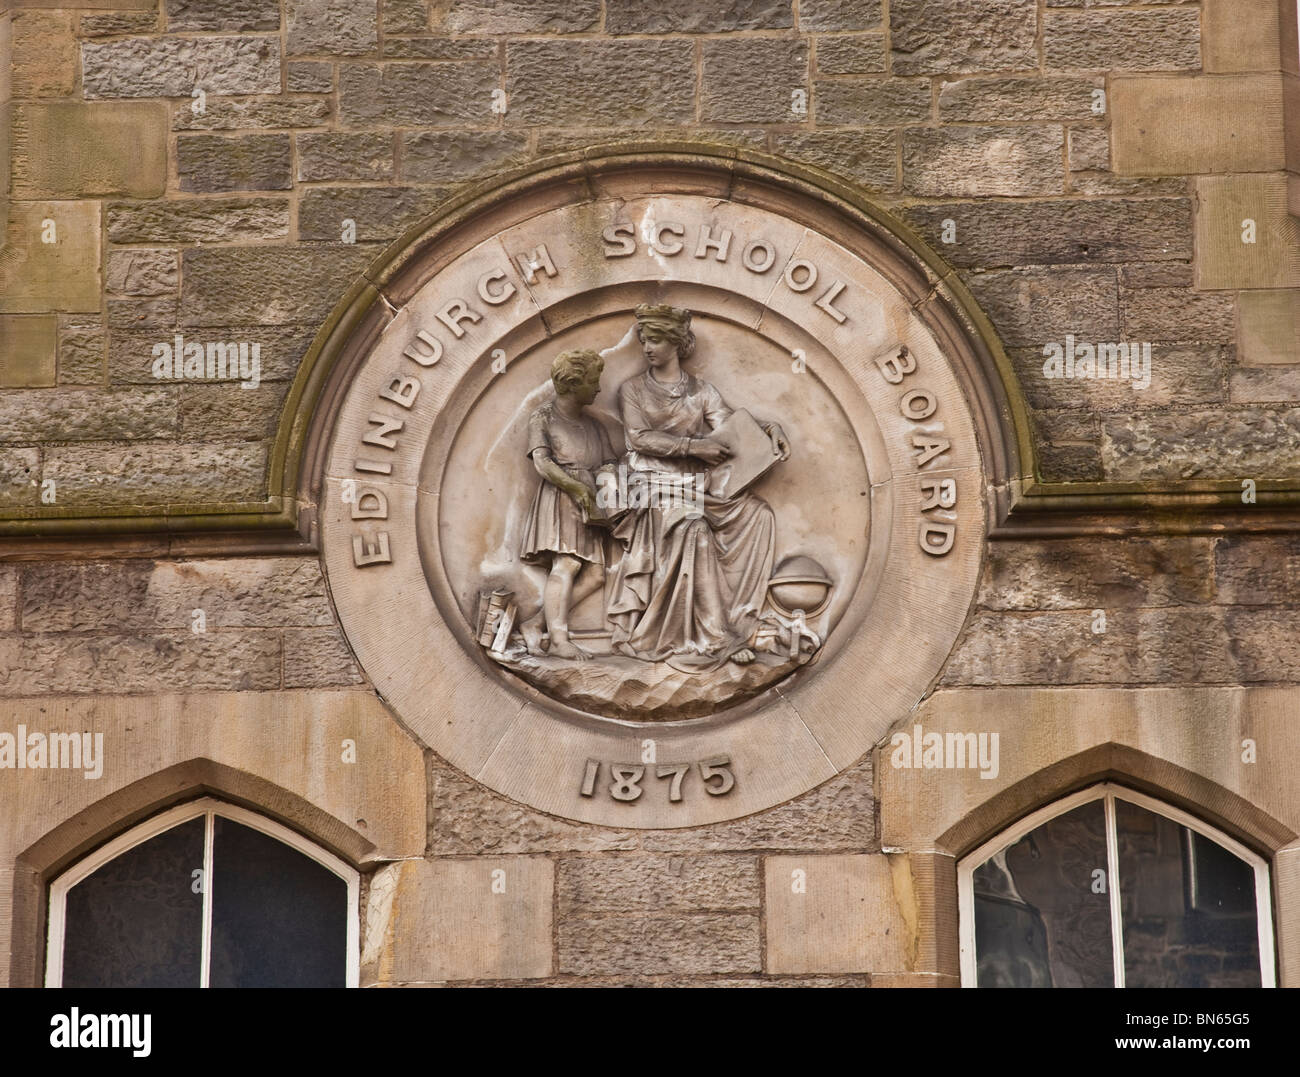 La placca della Edinburgh School Board sulla parete di una vecchia scuola primaria, ora una residenza privata, in Dean Village Edimburgo. Foto Stock